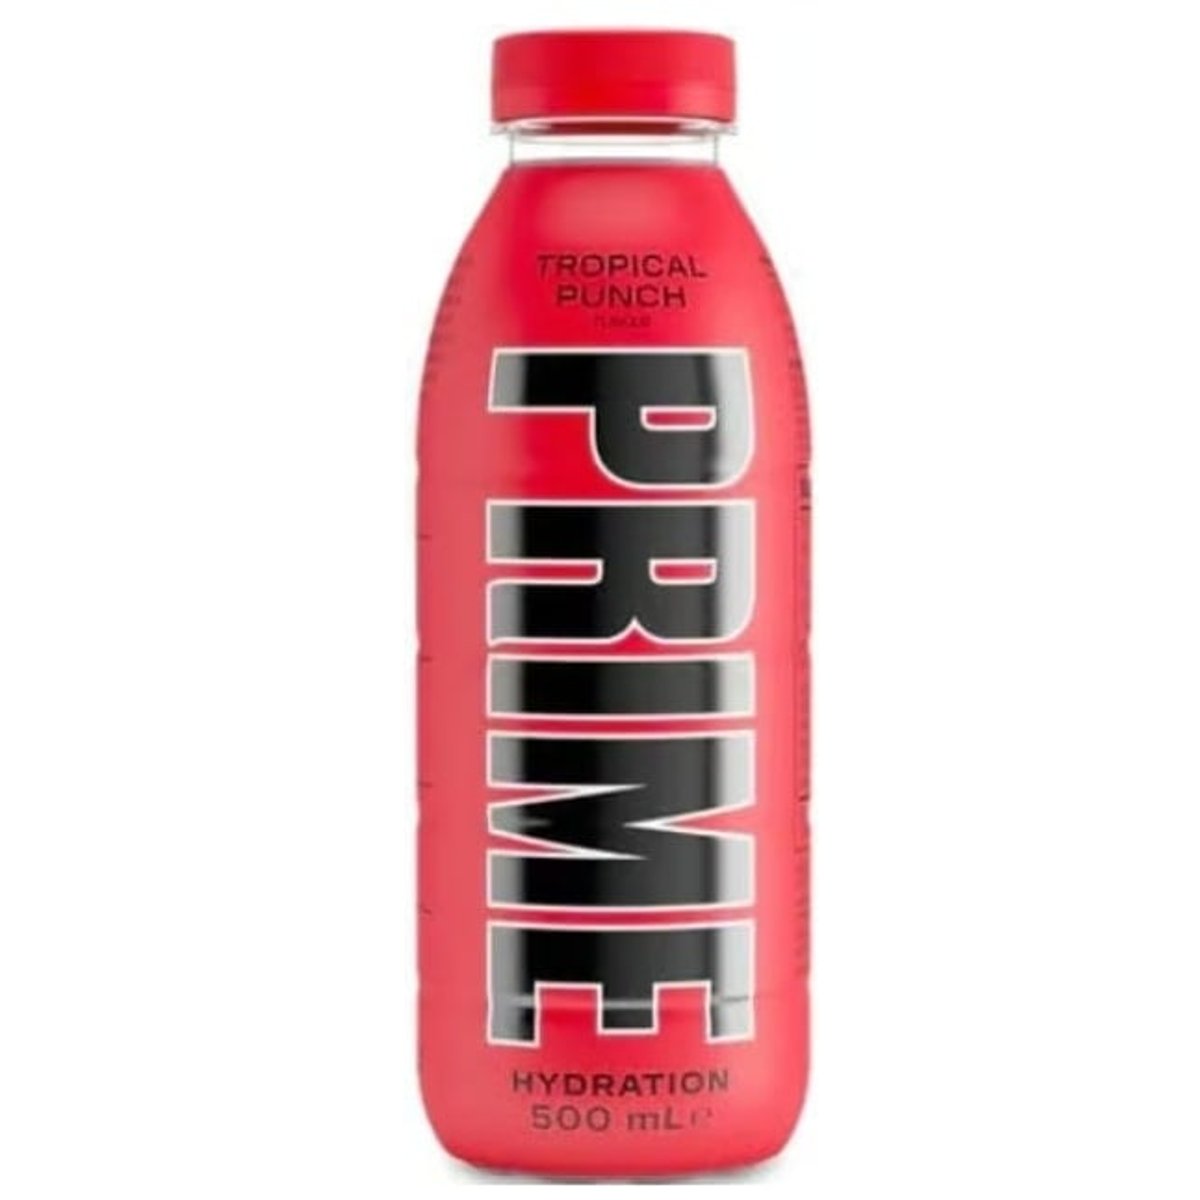 PRIME Hydration Tropical Punch s příchutí tropického punče